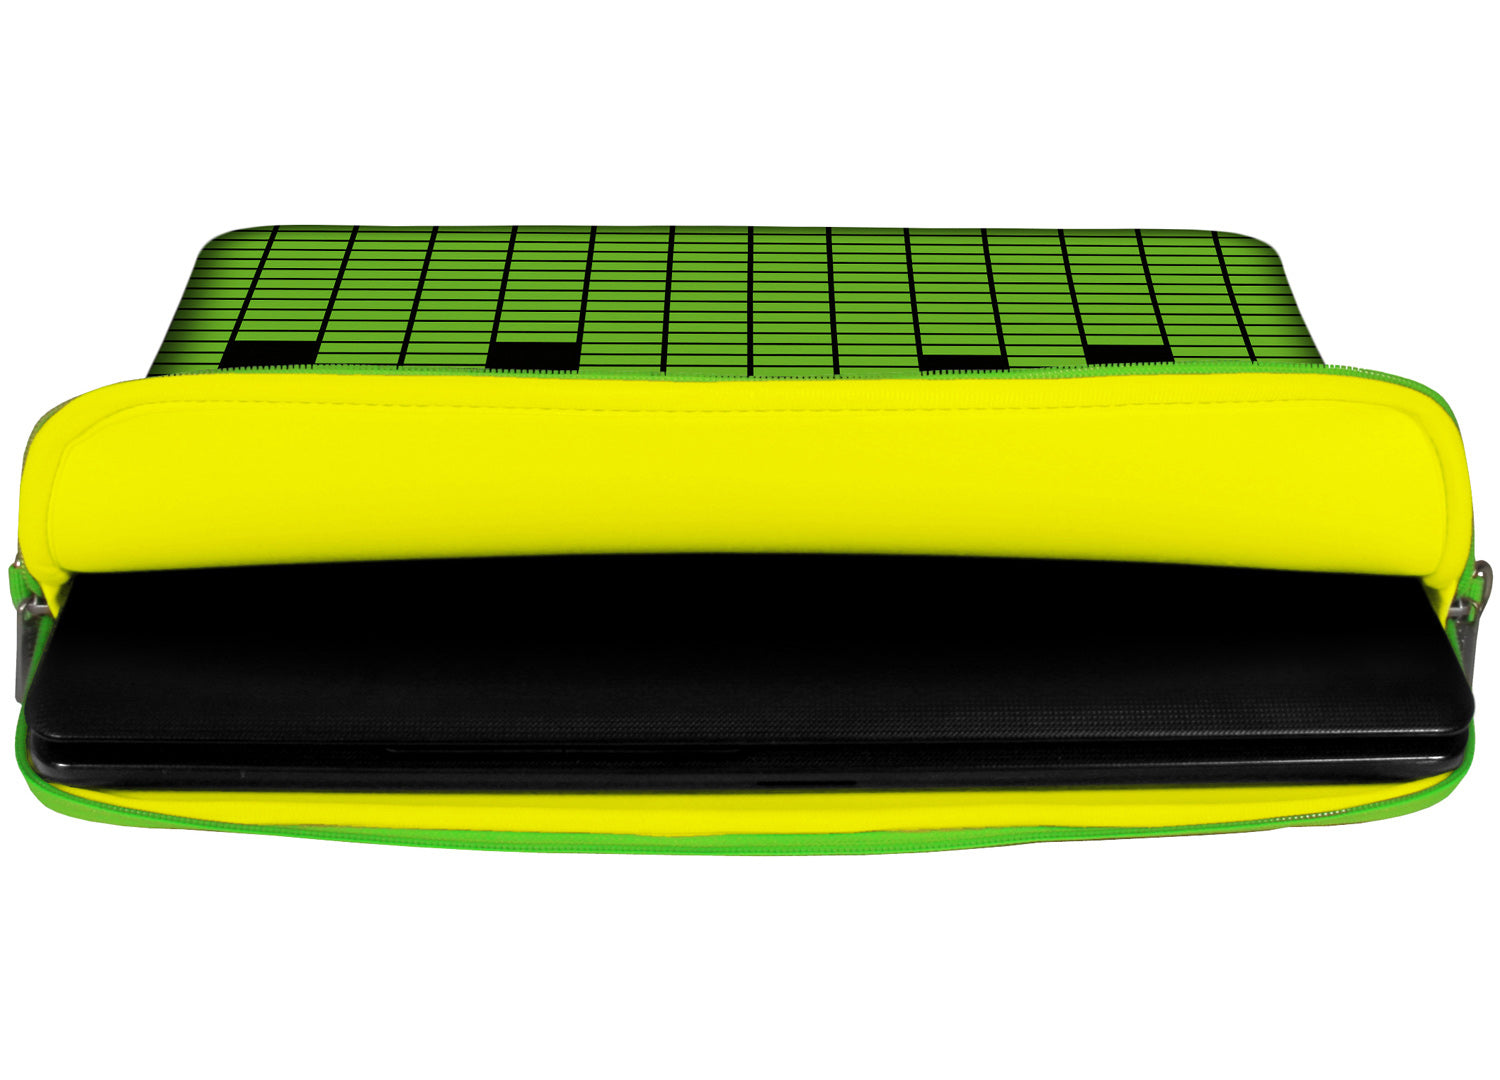 Innenansicht mit Schutzlippen der LS154 Equalizer Designer Laptop Tasche in gelb aus wasserabweisendem Neopren